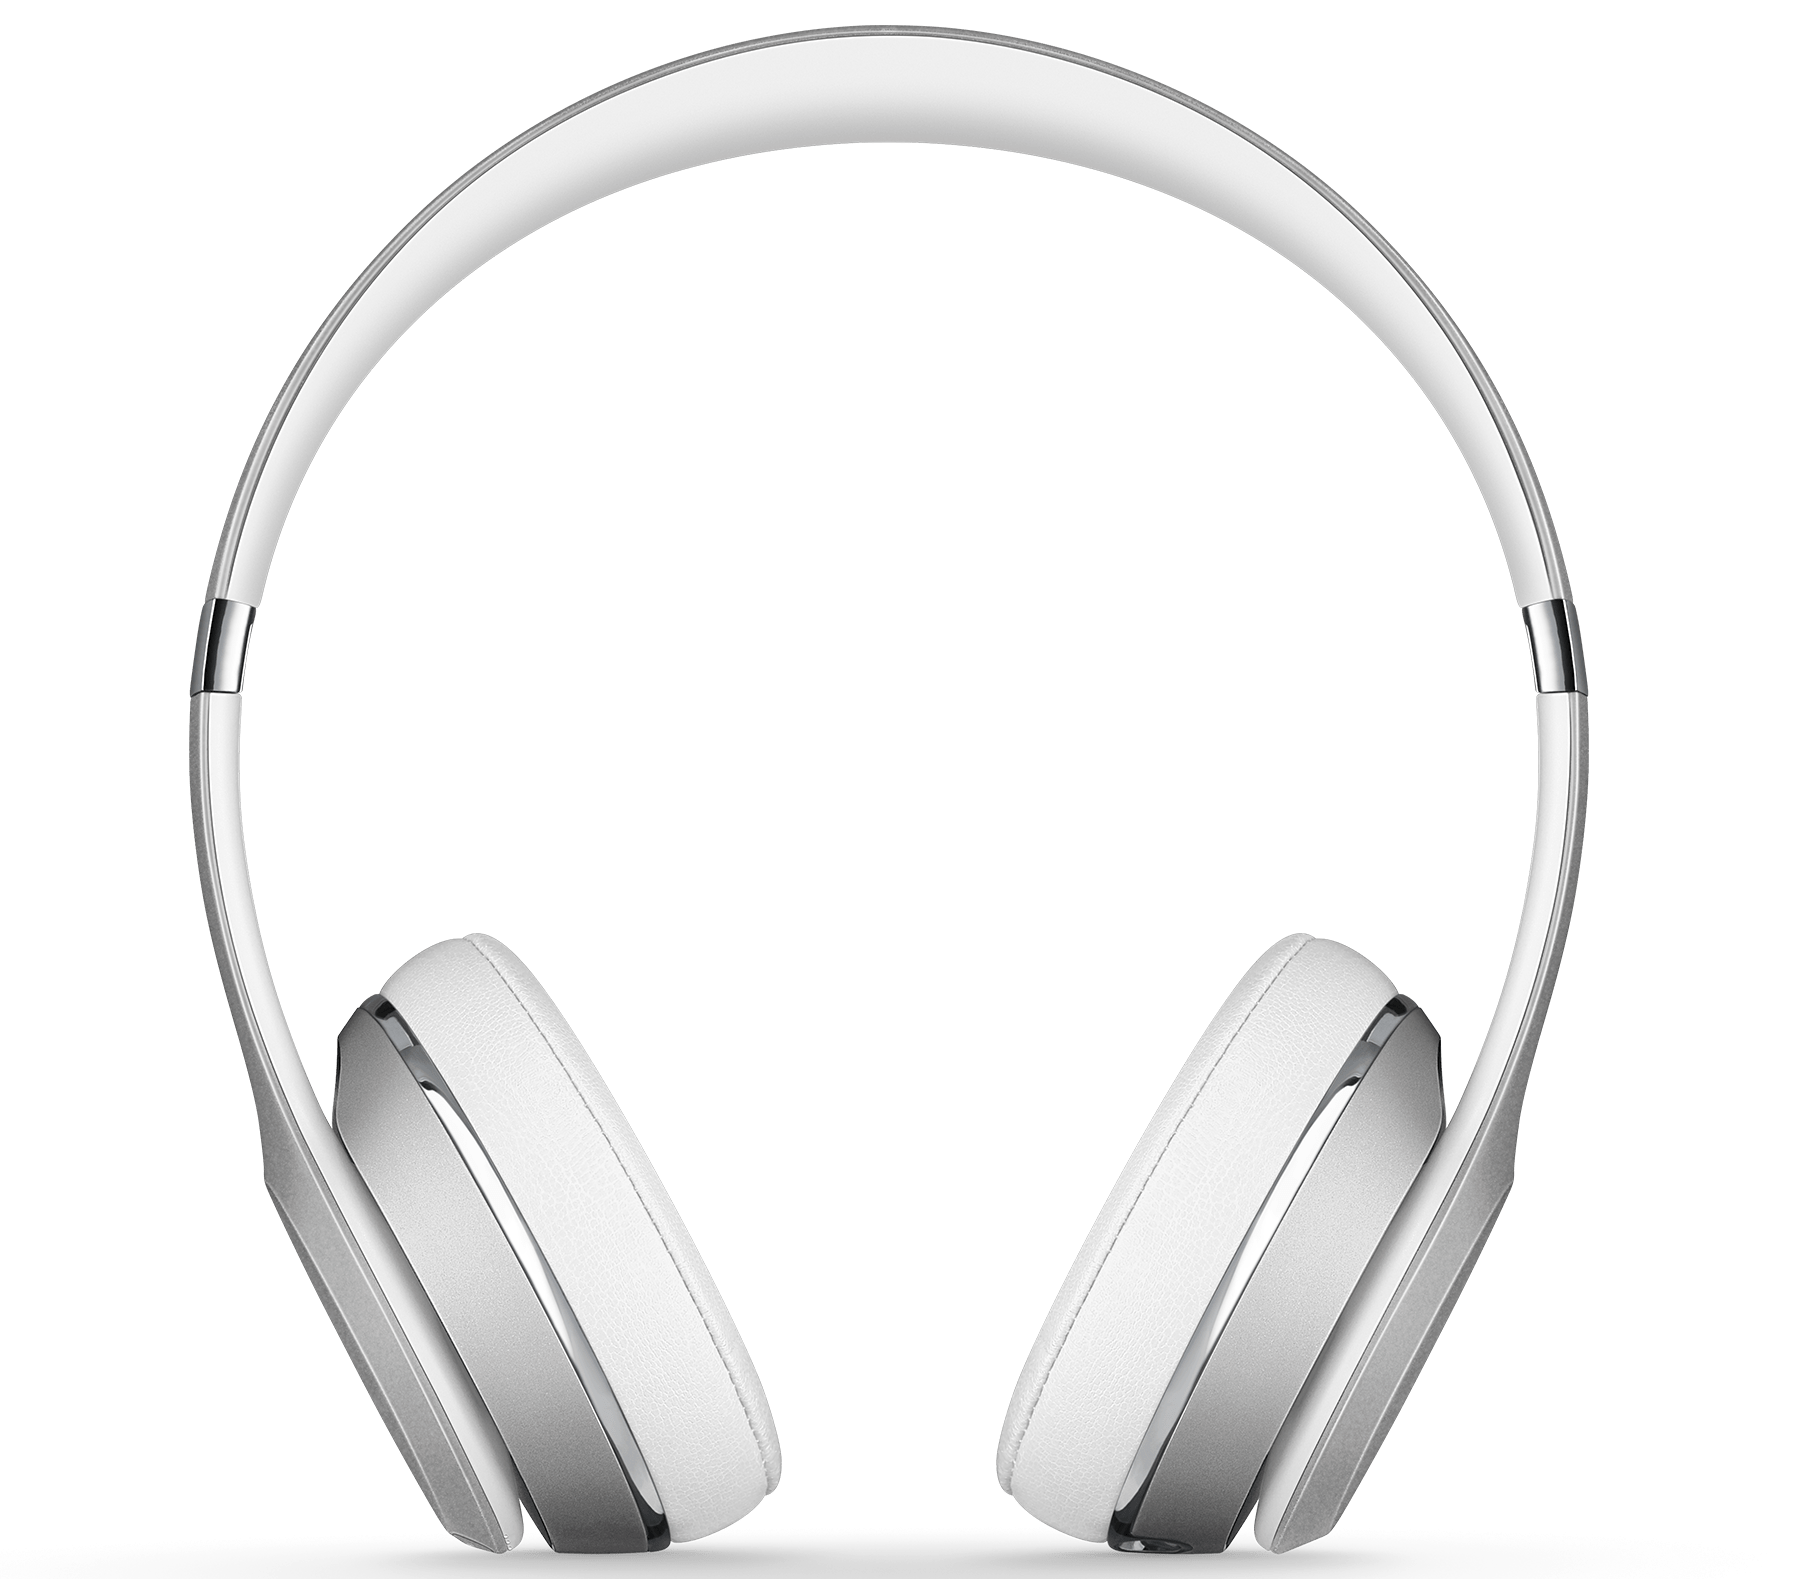  Headphone Beats tersedia dengan harga diskon pada Black Friday tahun lalu